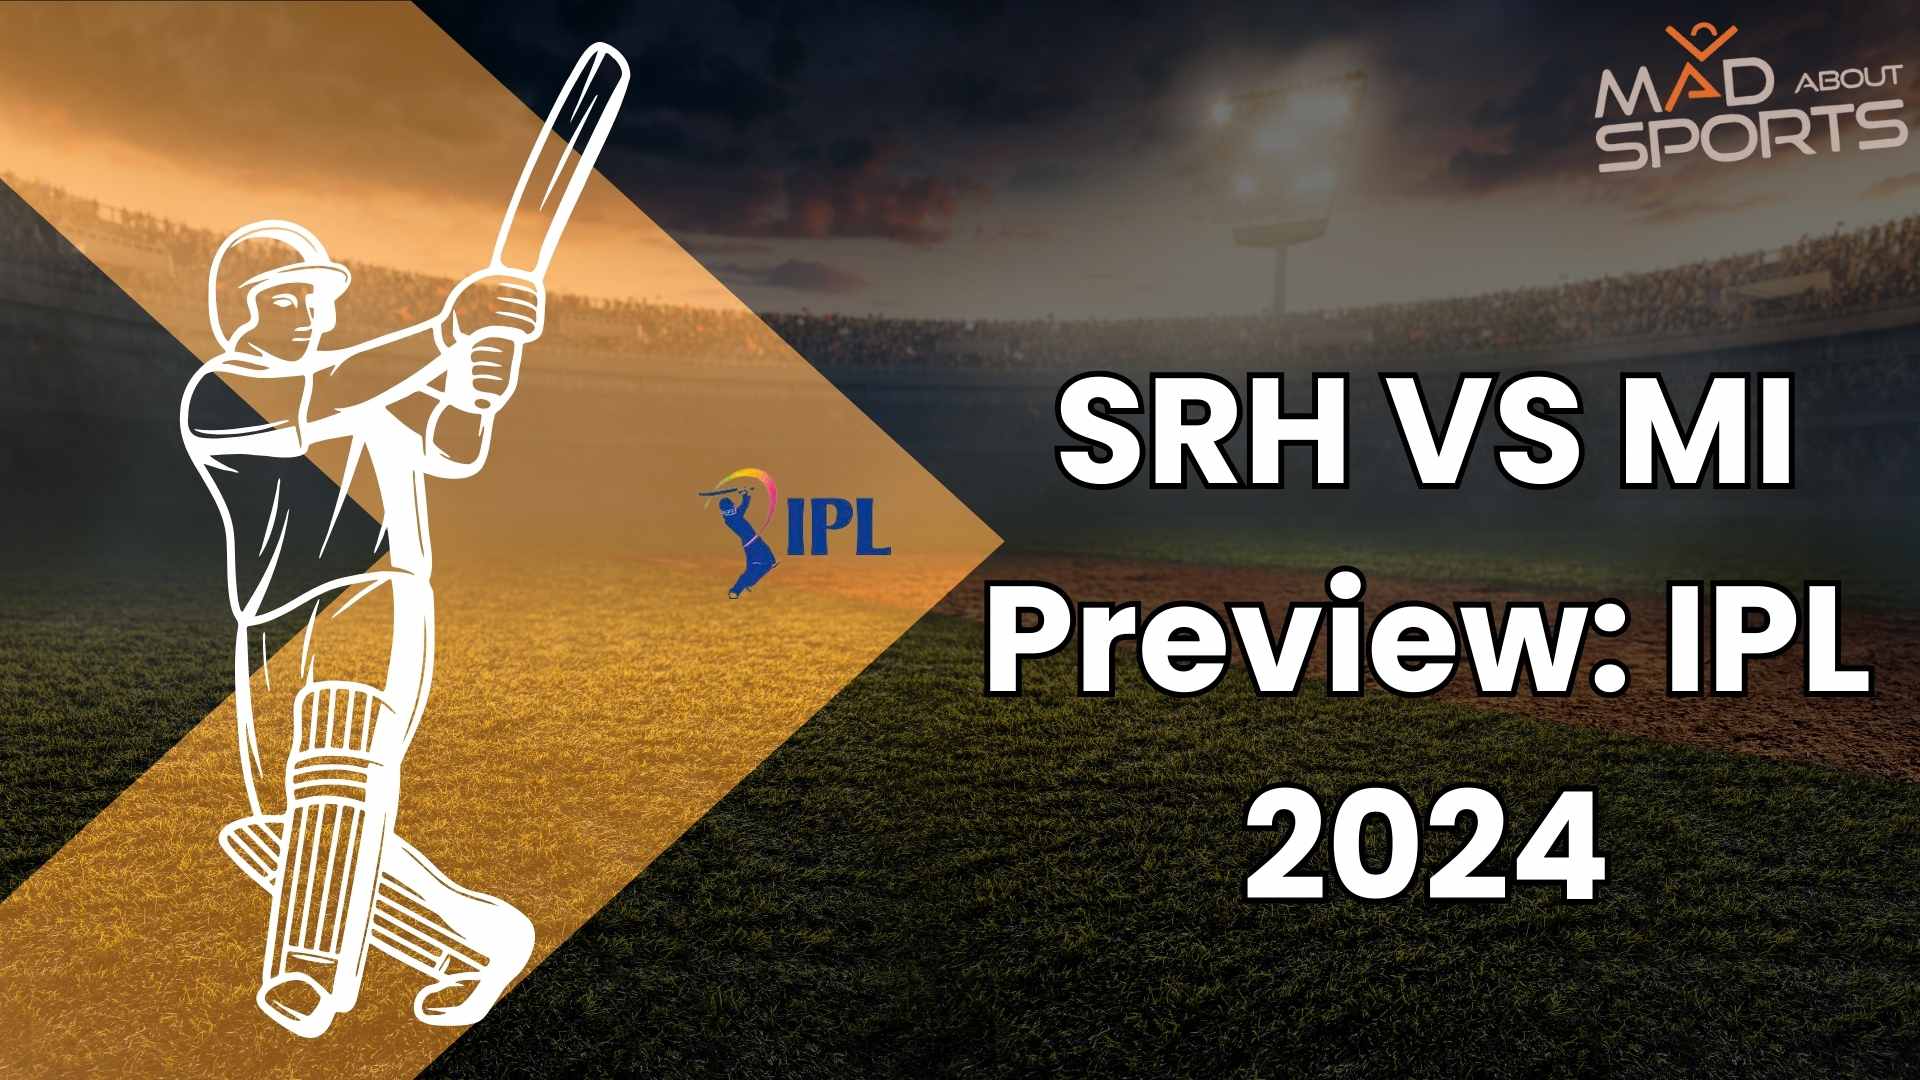 SRH VS MI Preview: IPL 2024